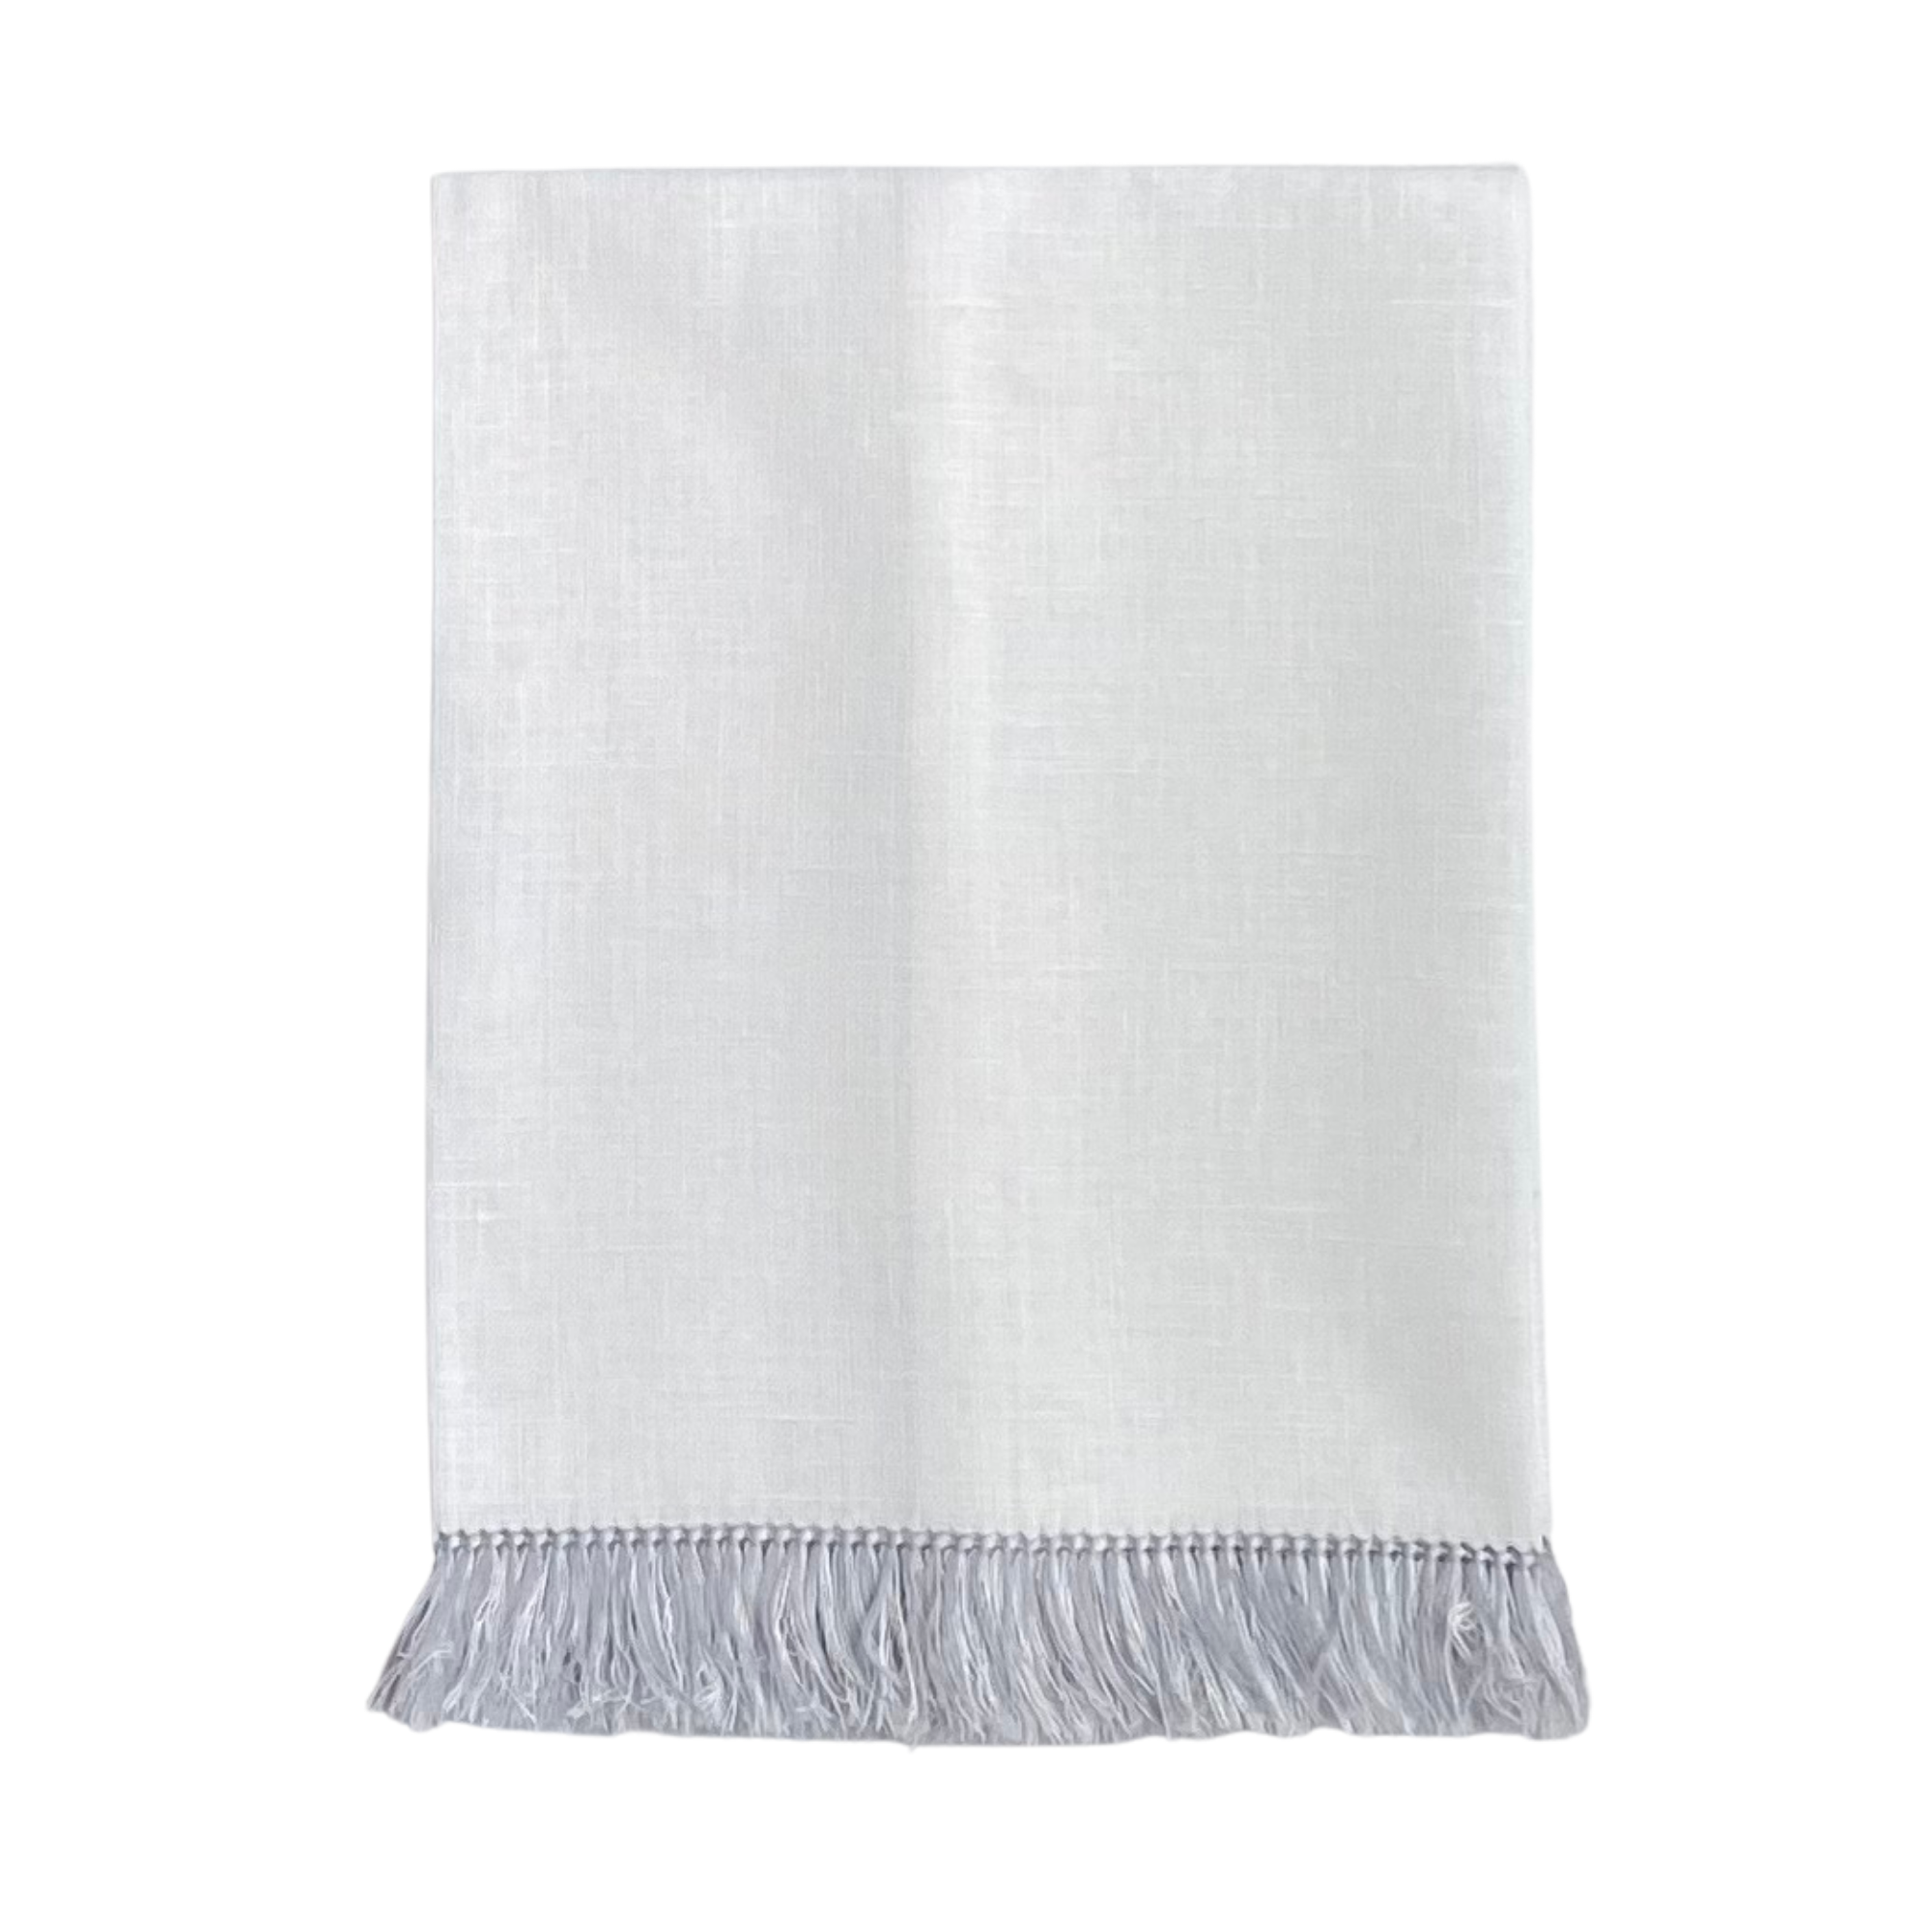 Fringe Benefits Guest Towel